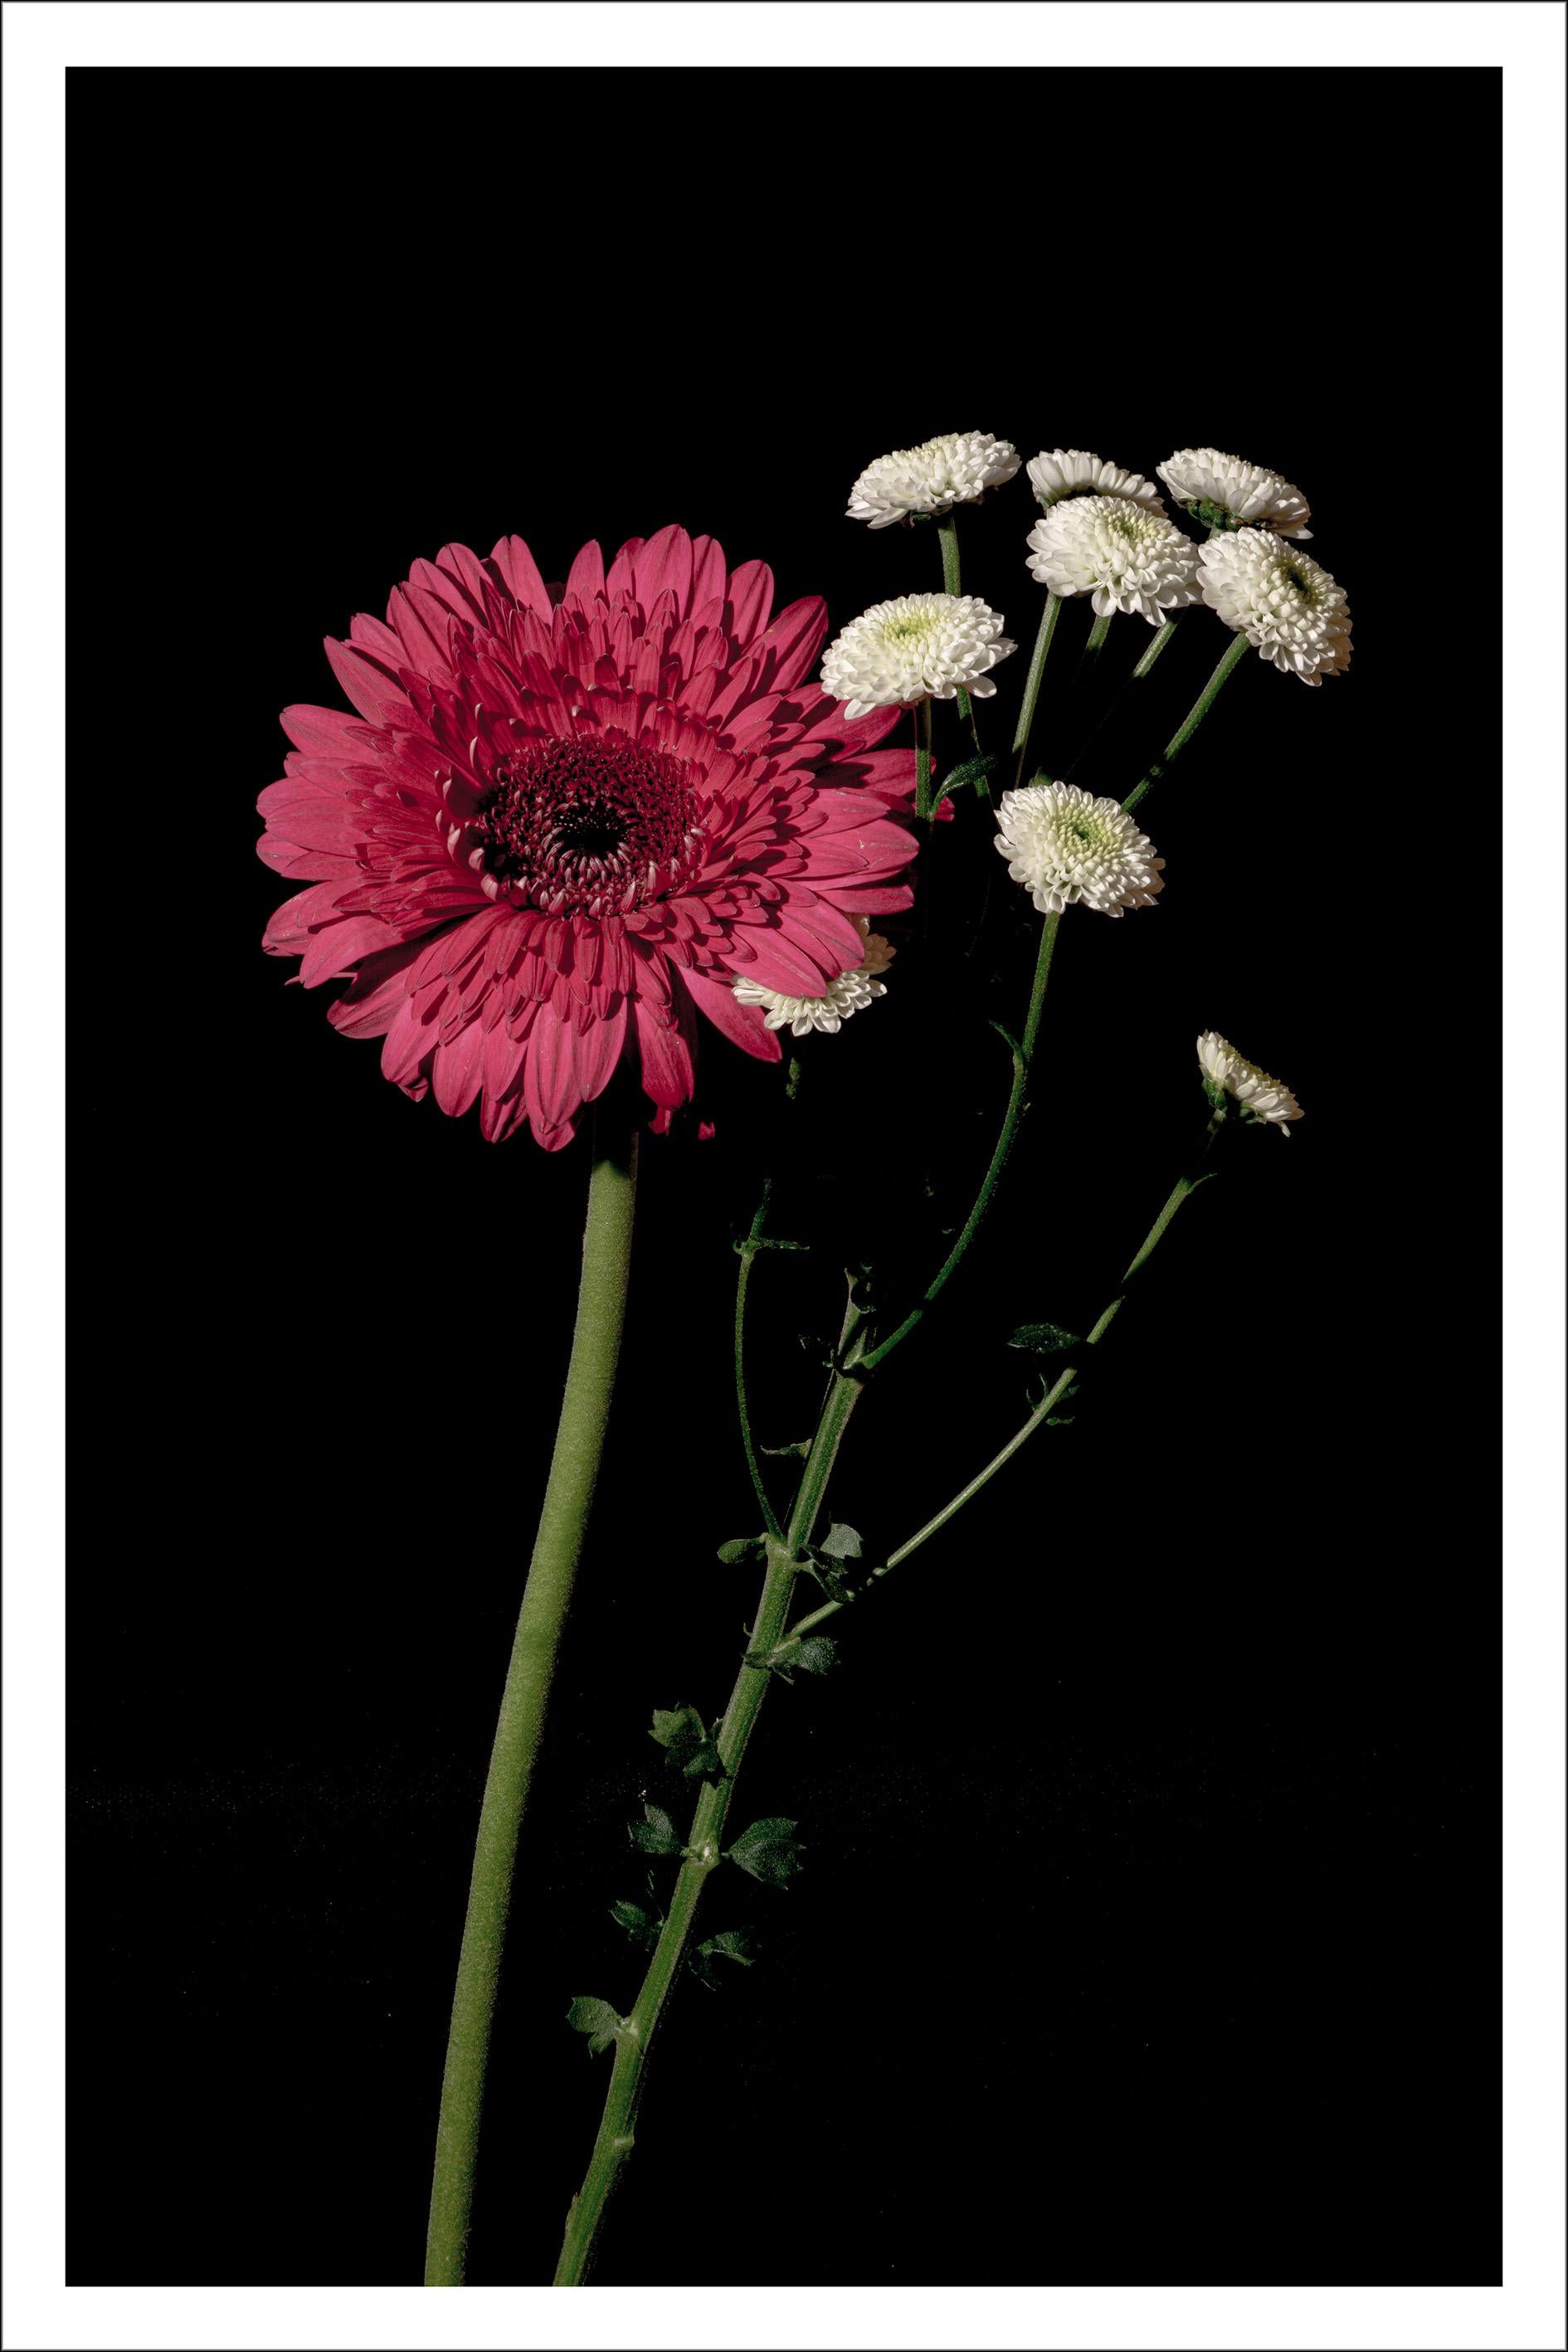 Still-Life Print Kind of Cyan - Fleurs délicates roses et blanches, fond noir, impression giclée élégante et lumineuse